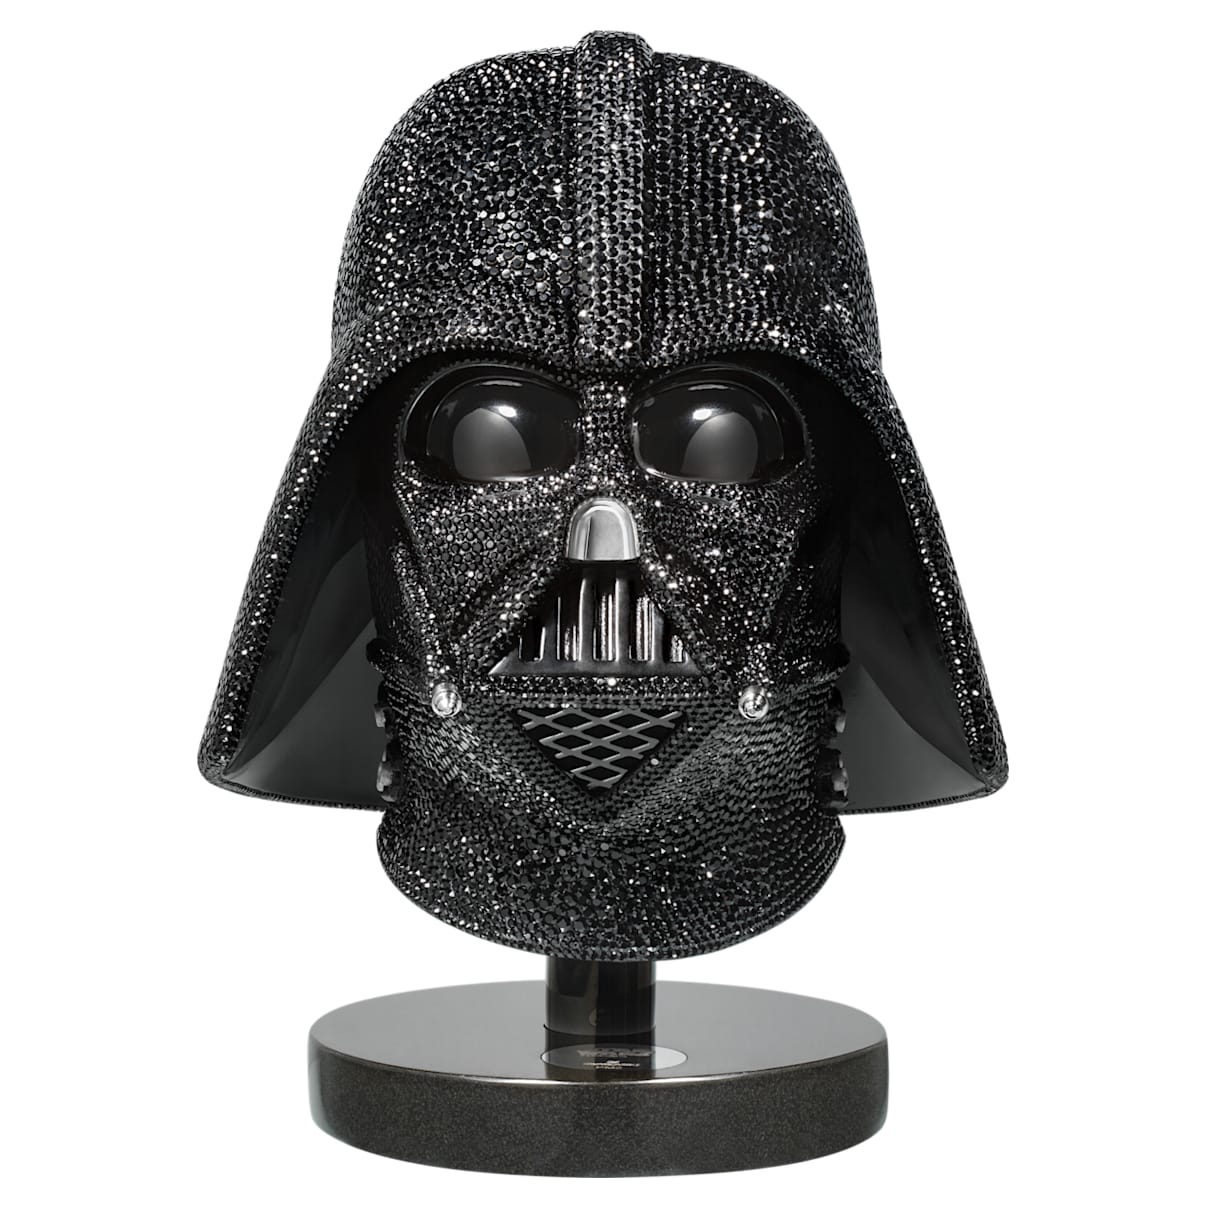 Star Wars - Darth Vader Helmet, L.E.